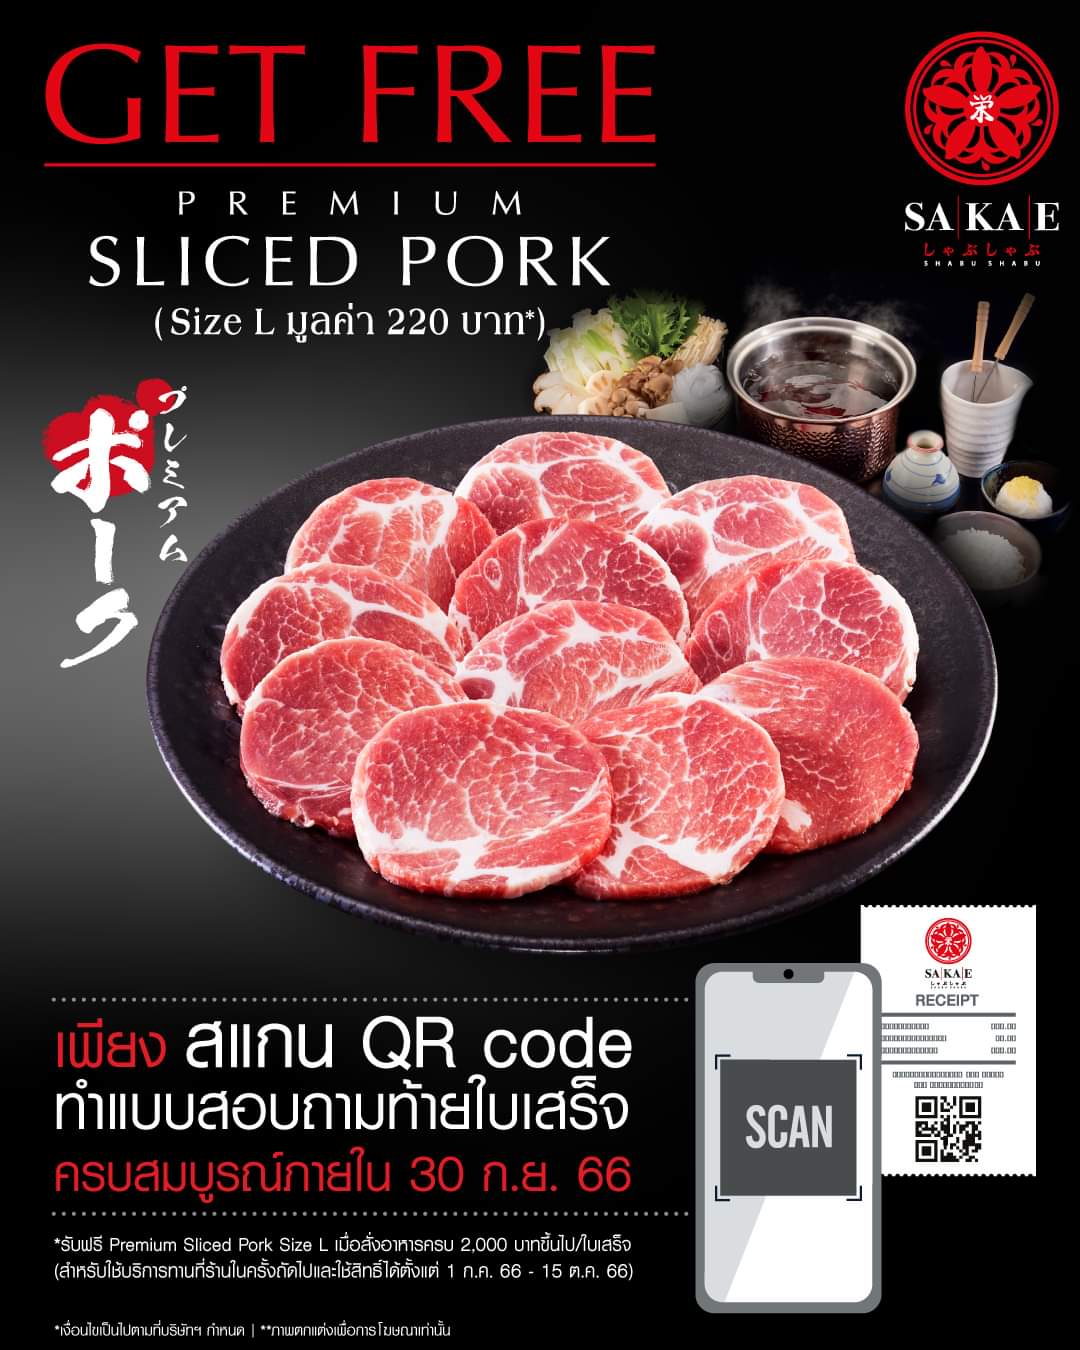 โปรโมชั่น โออิชิ : #รับฟรี "Premium Sliced Pork Size L" (มูลค่า 220 บาท) เพียงทำแบบสอบถามท้ายใบเสร็จ